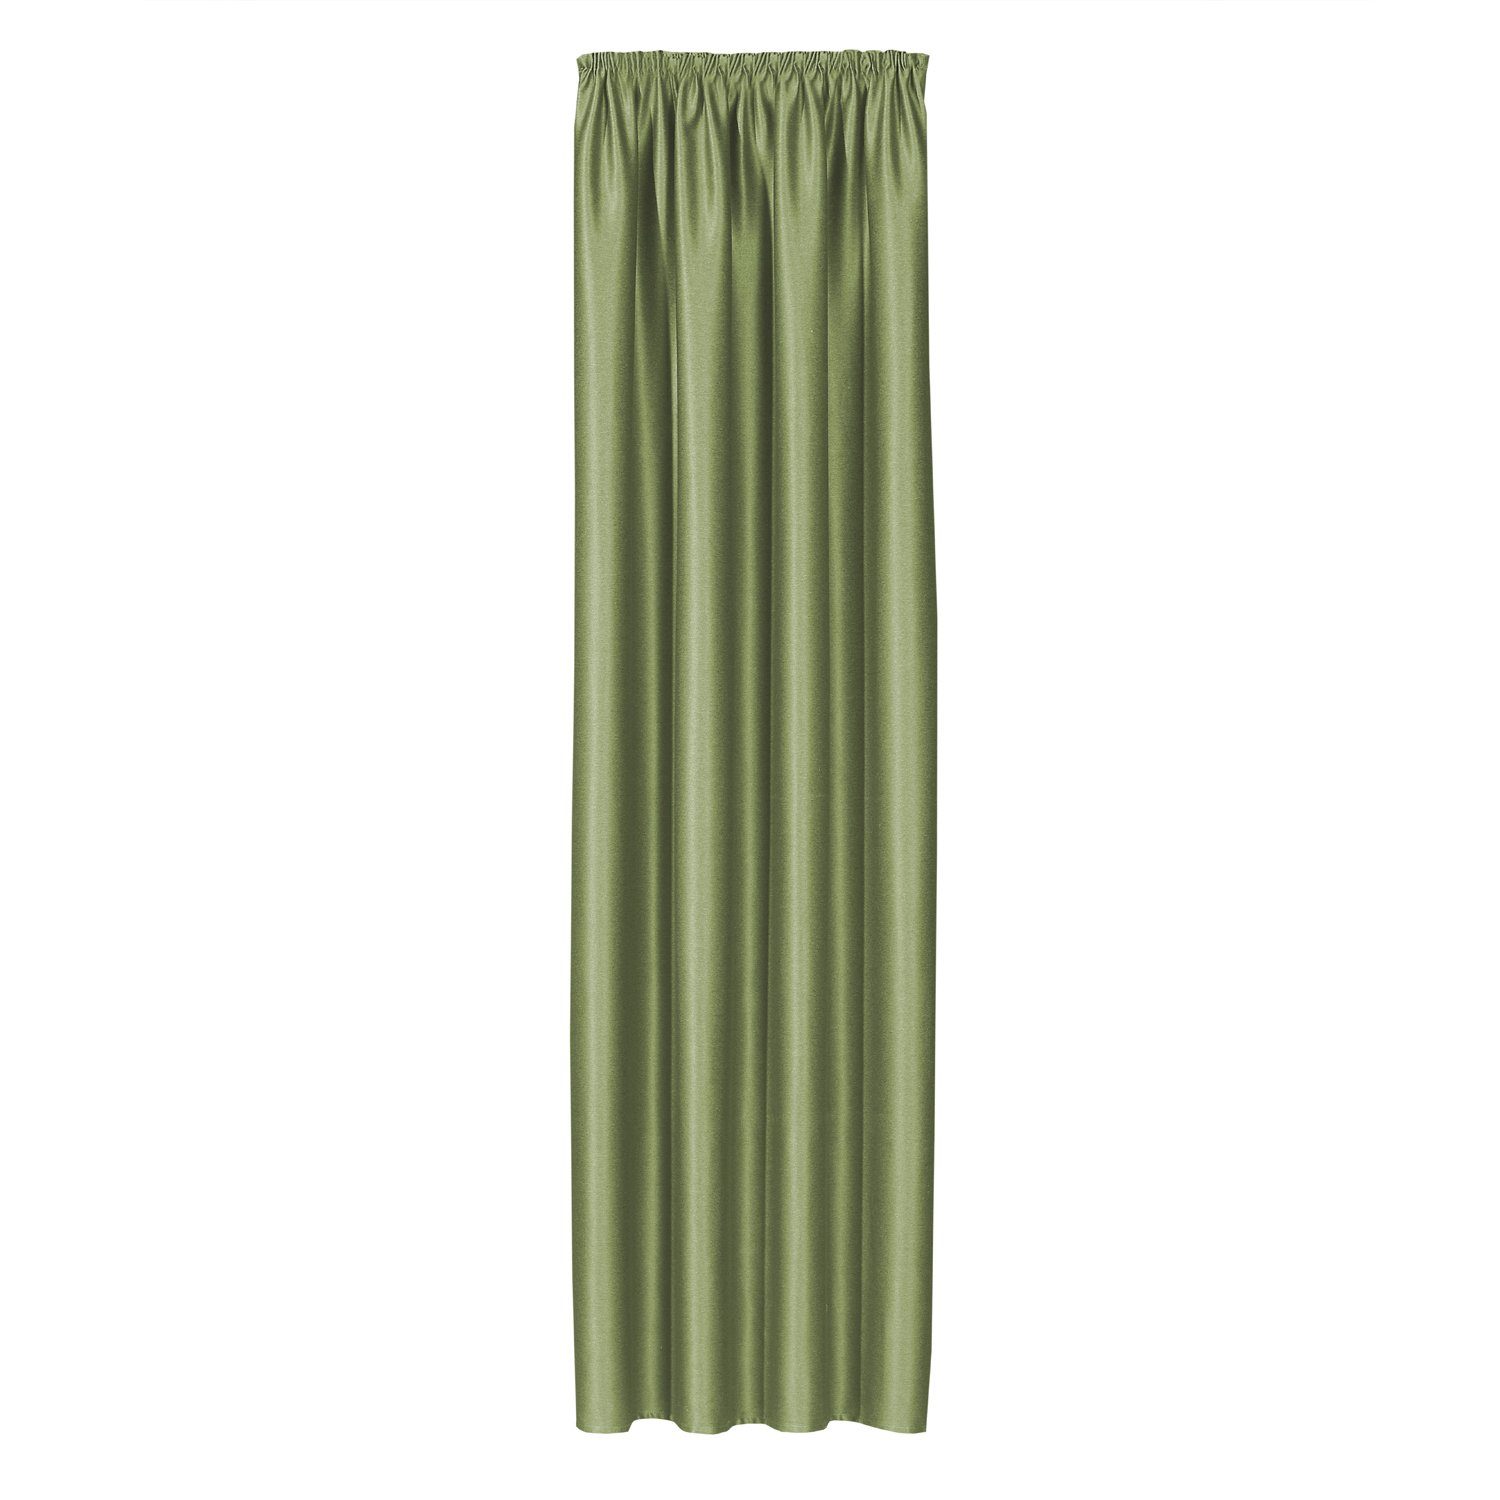 Giantore Uni dunkelgrün, 140x245cm, Kombigardine, Gardine edle